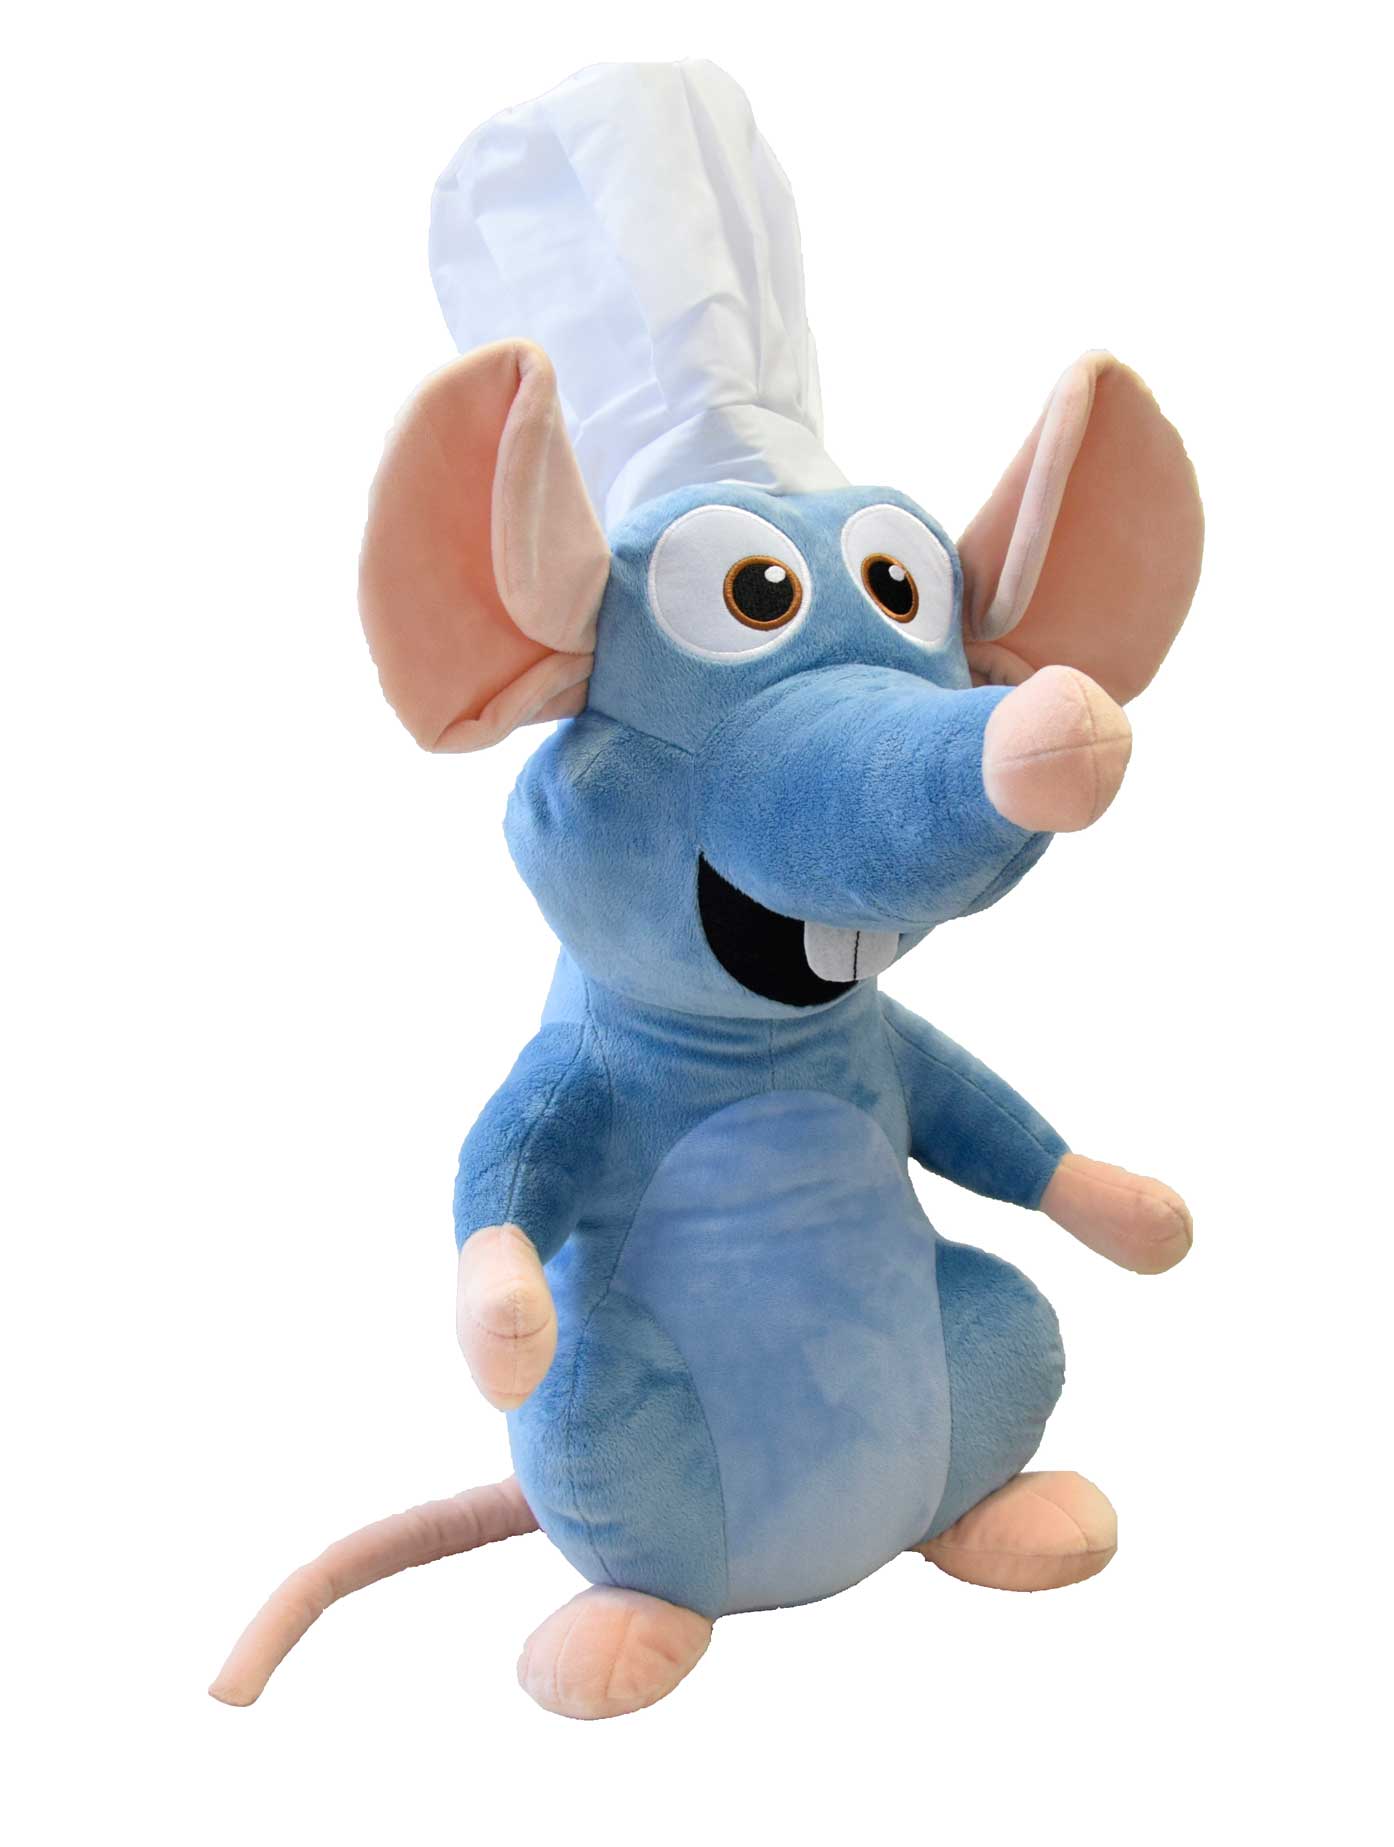 Merchandising Disney: Ratatouille - Peluche Remy 60 Cm Con Cappello Da Chef NUOVO SIGILLATO, EDIZIONE DEL 19/08/2019 SUBITO DISPONIBILE